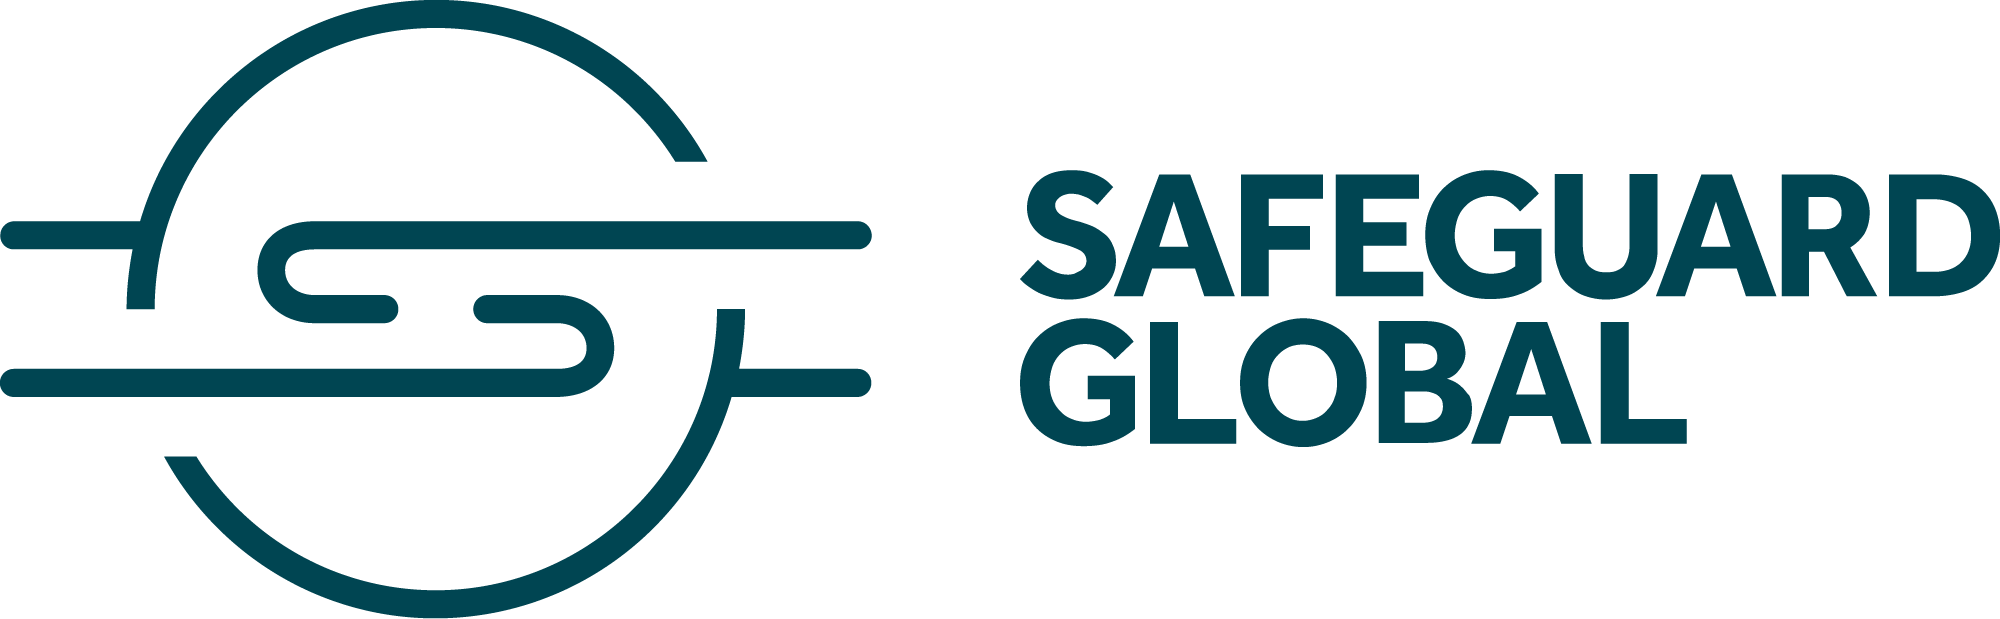 safeguard-global-logo